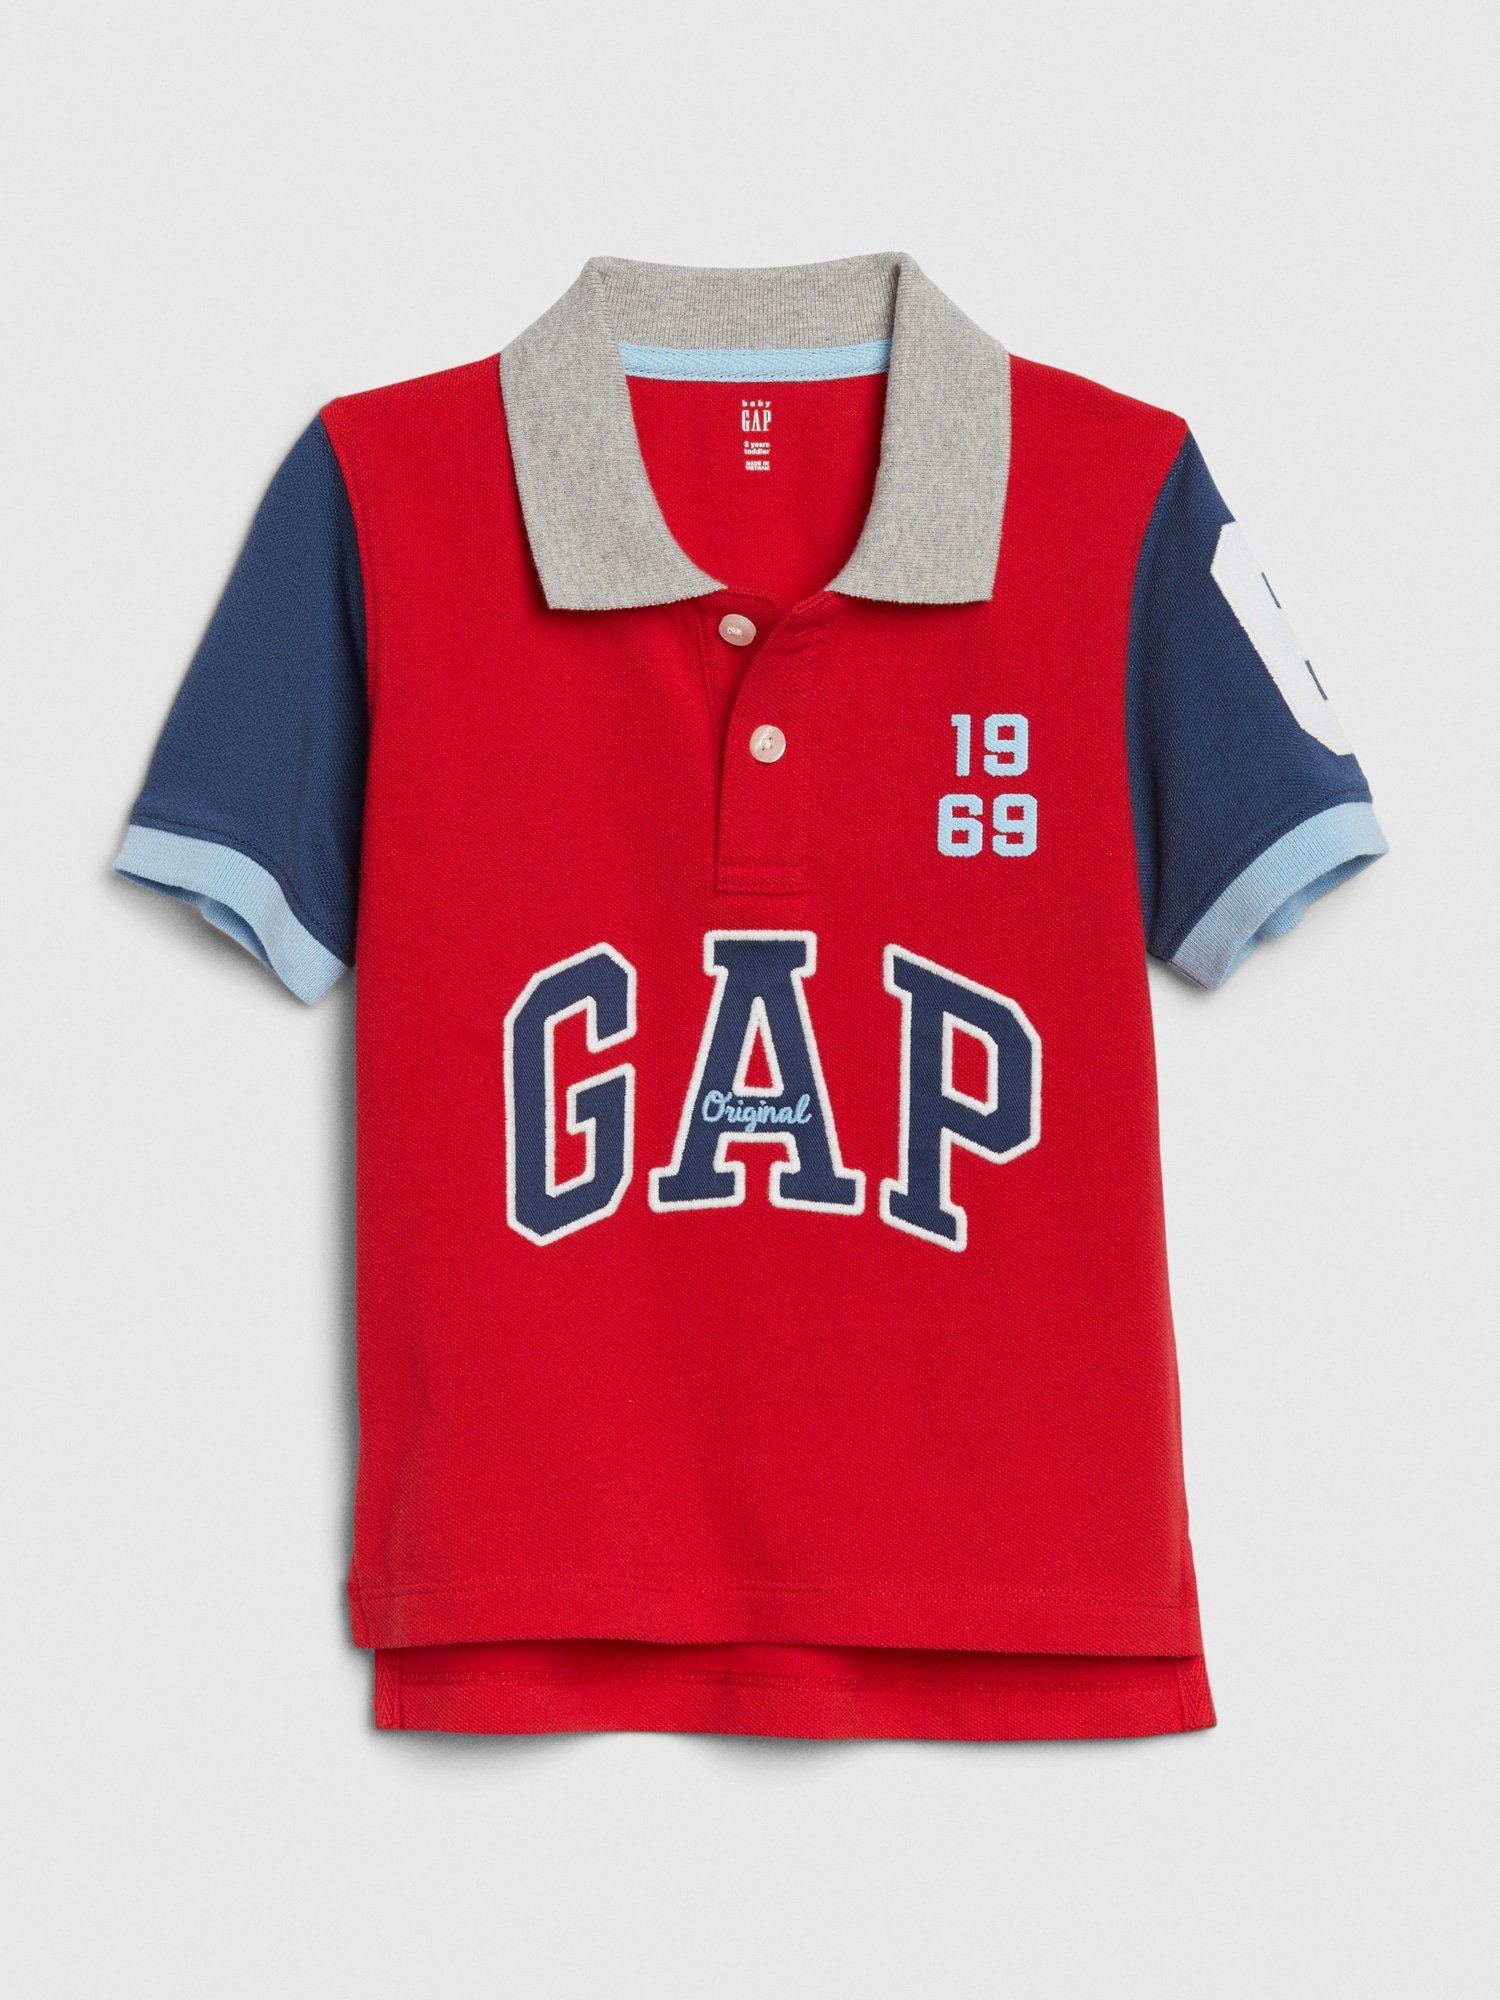 Gap Logo Polo Yaka T-Shirt product image